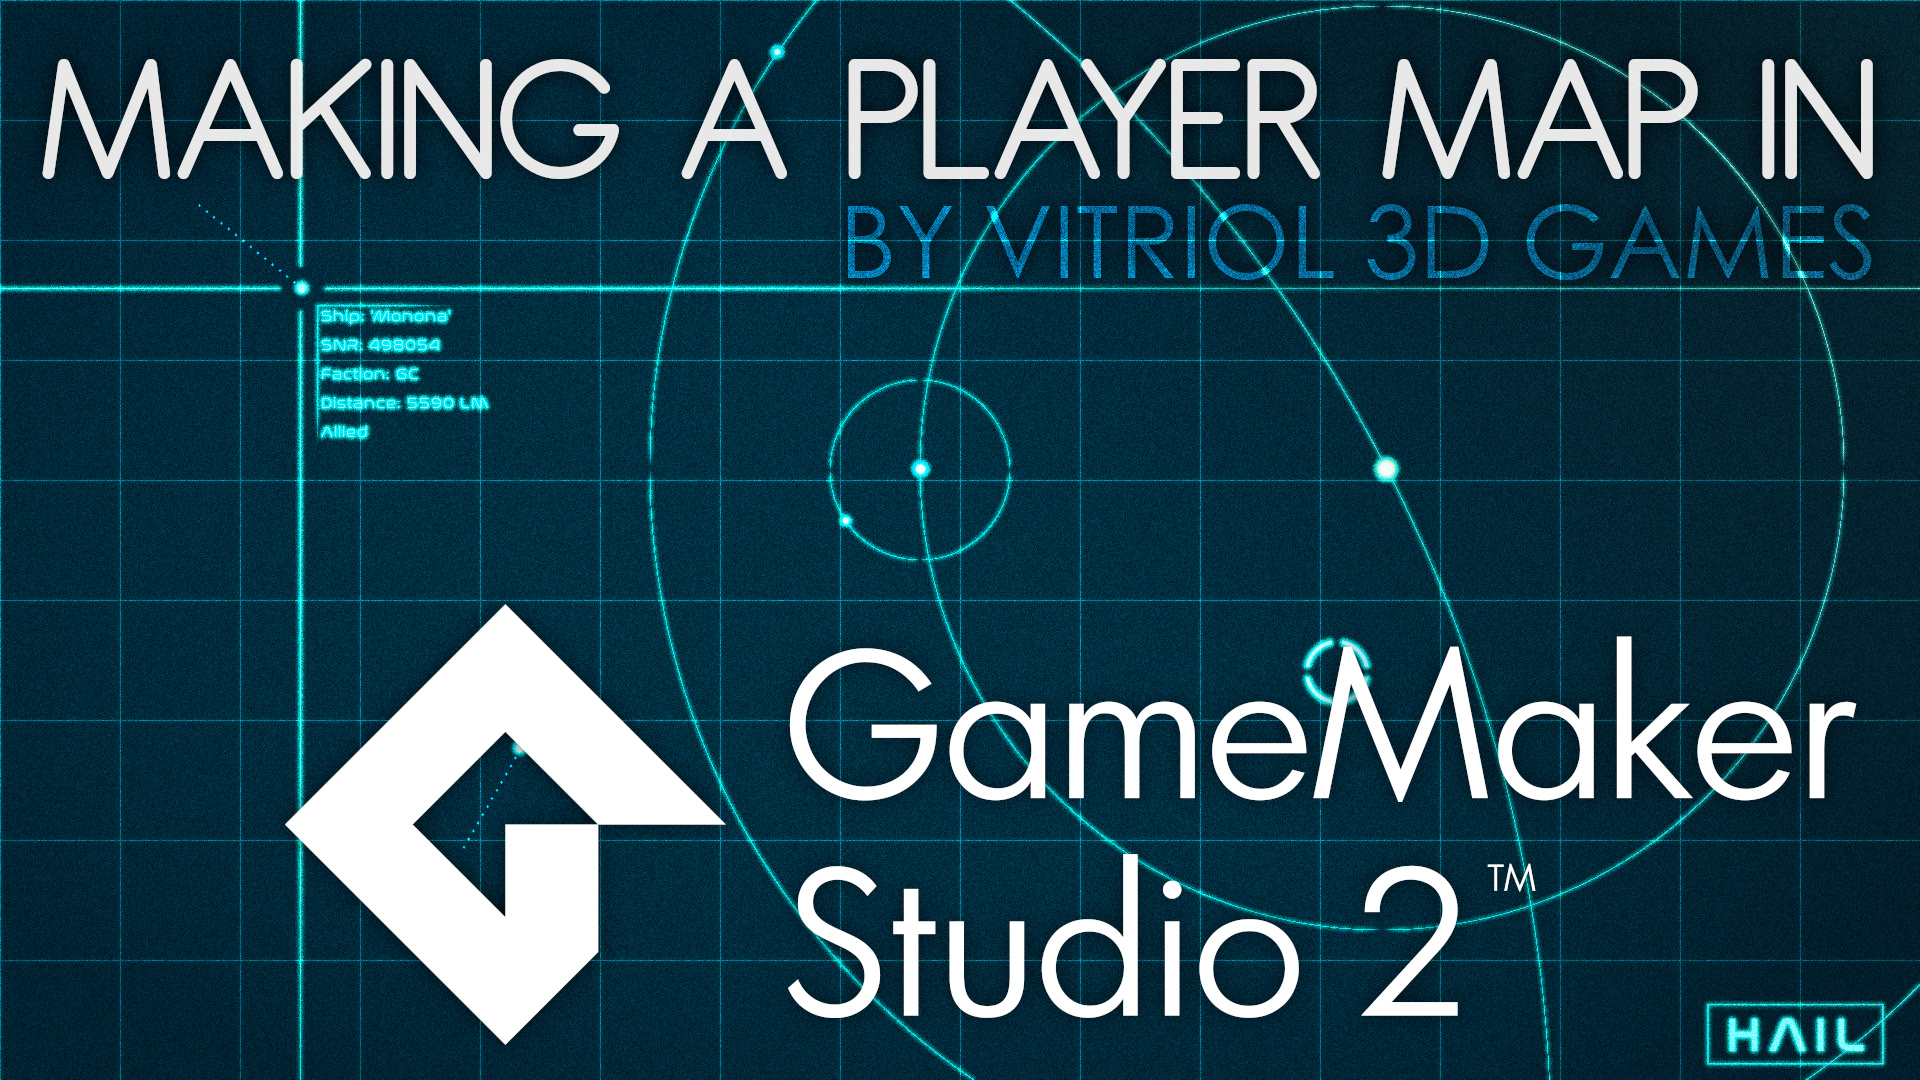 GameMaker Studio 2